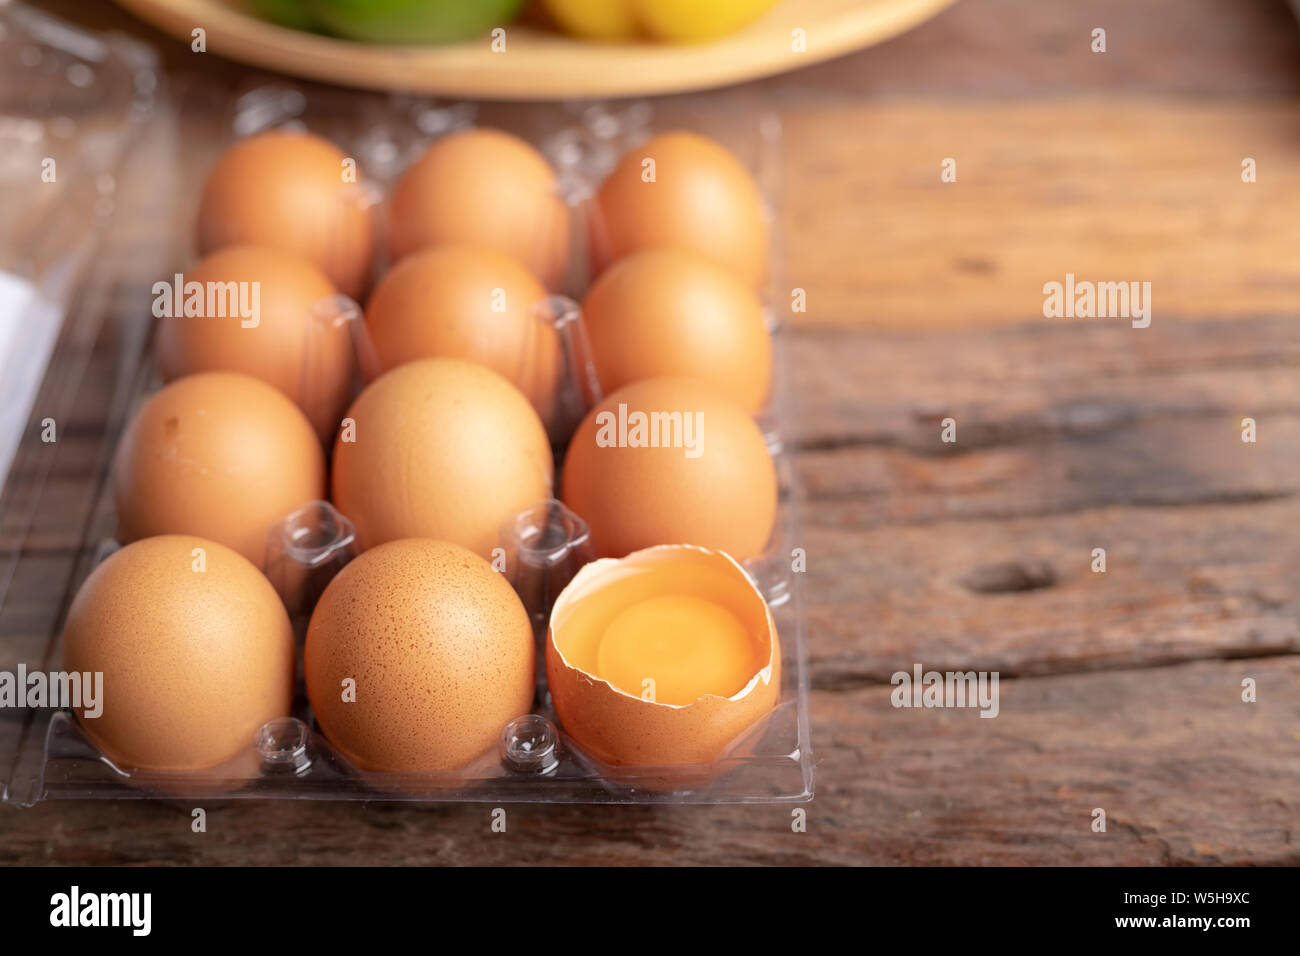 Uova di pollo e tuorlo d'uovo con rotti nella scatola di plastica sul tavolo di legno. Uova di gallina sono ricche in proteina di elevata qualità che è efficace nell'assorbimento. Foto Stock